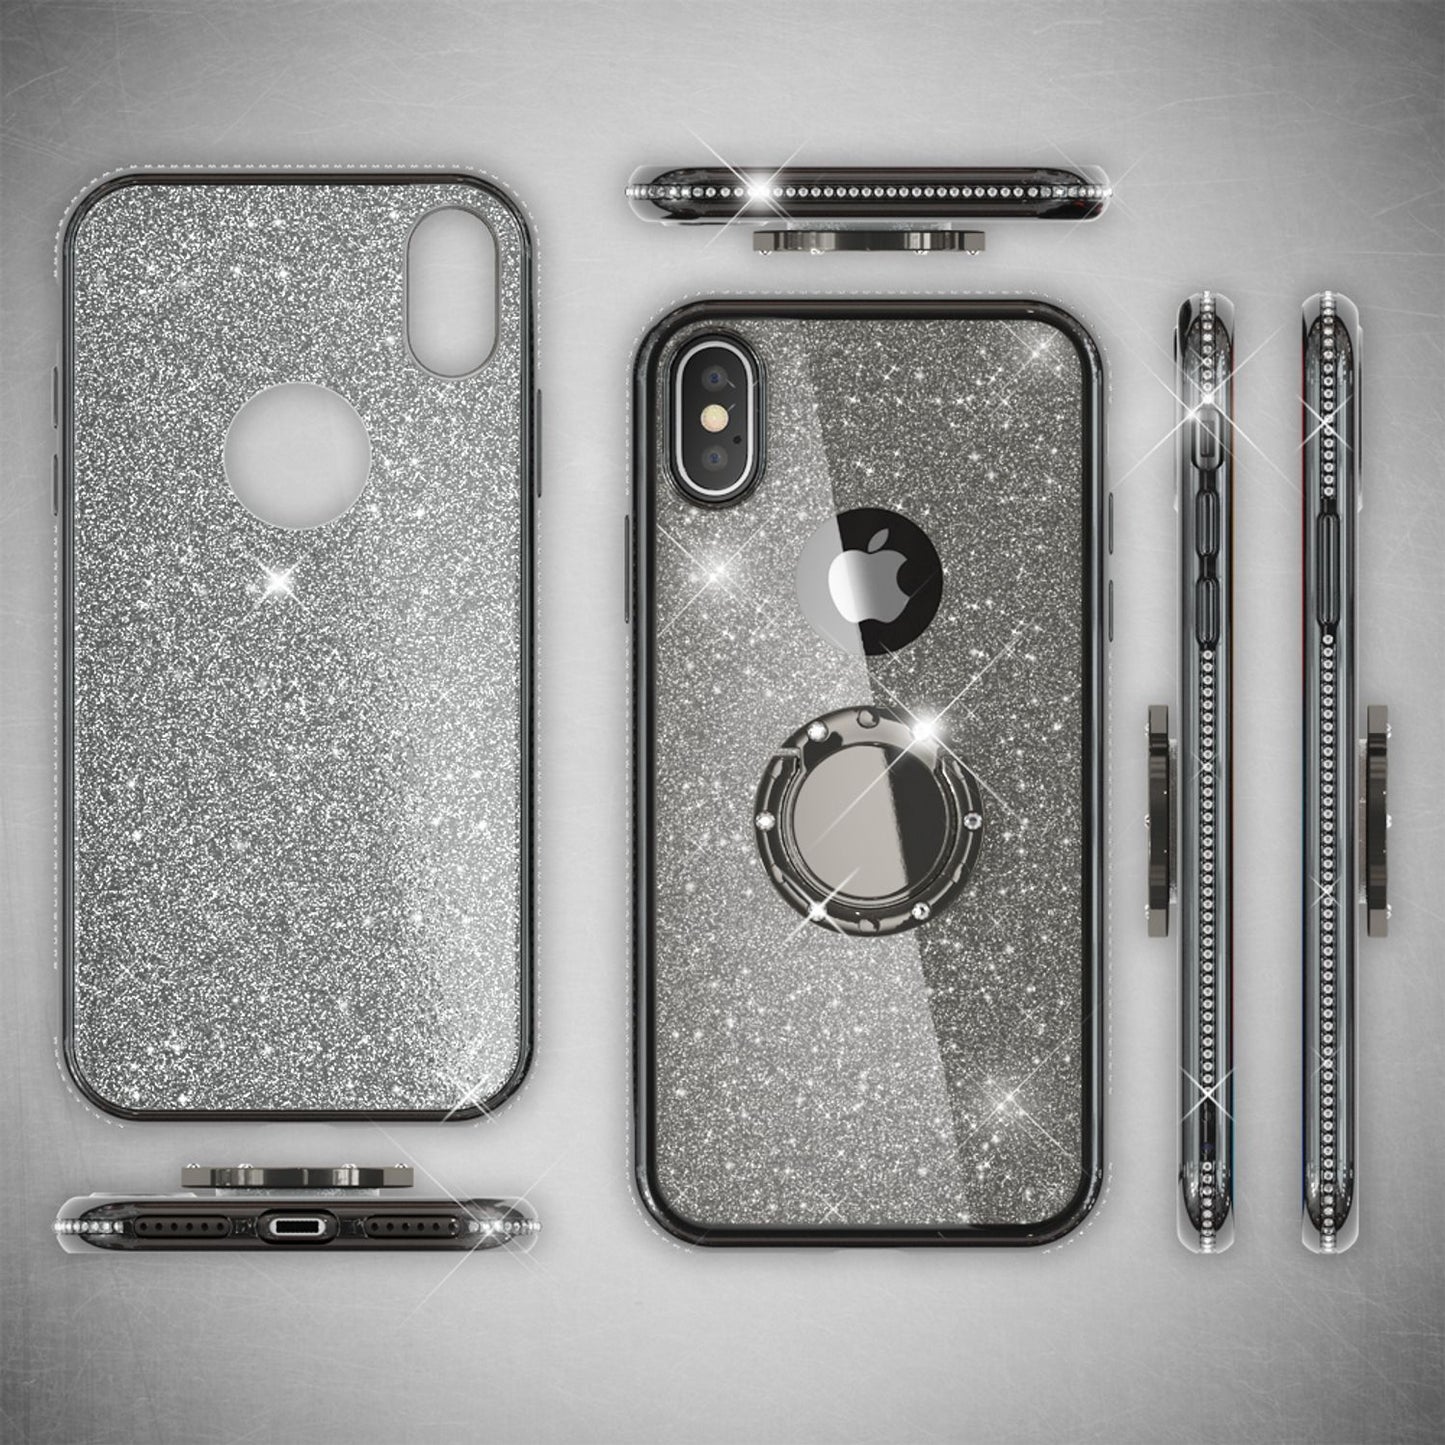 NALIA Ring Hülle für iPhone XS Max, Glitter Handy Schutz Case Cover Tasche Etui